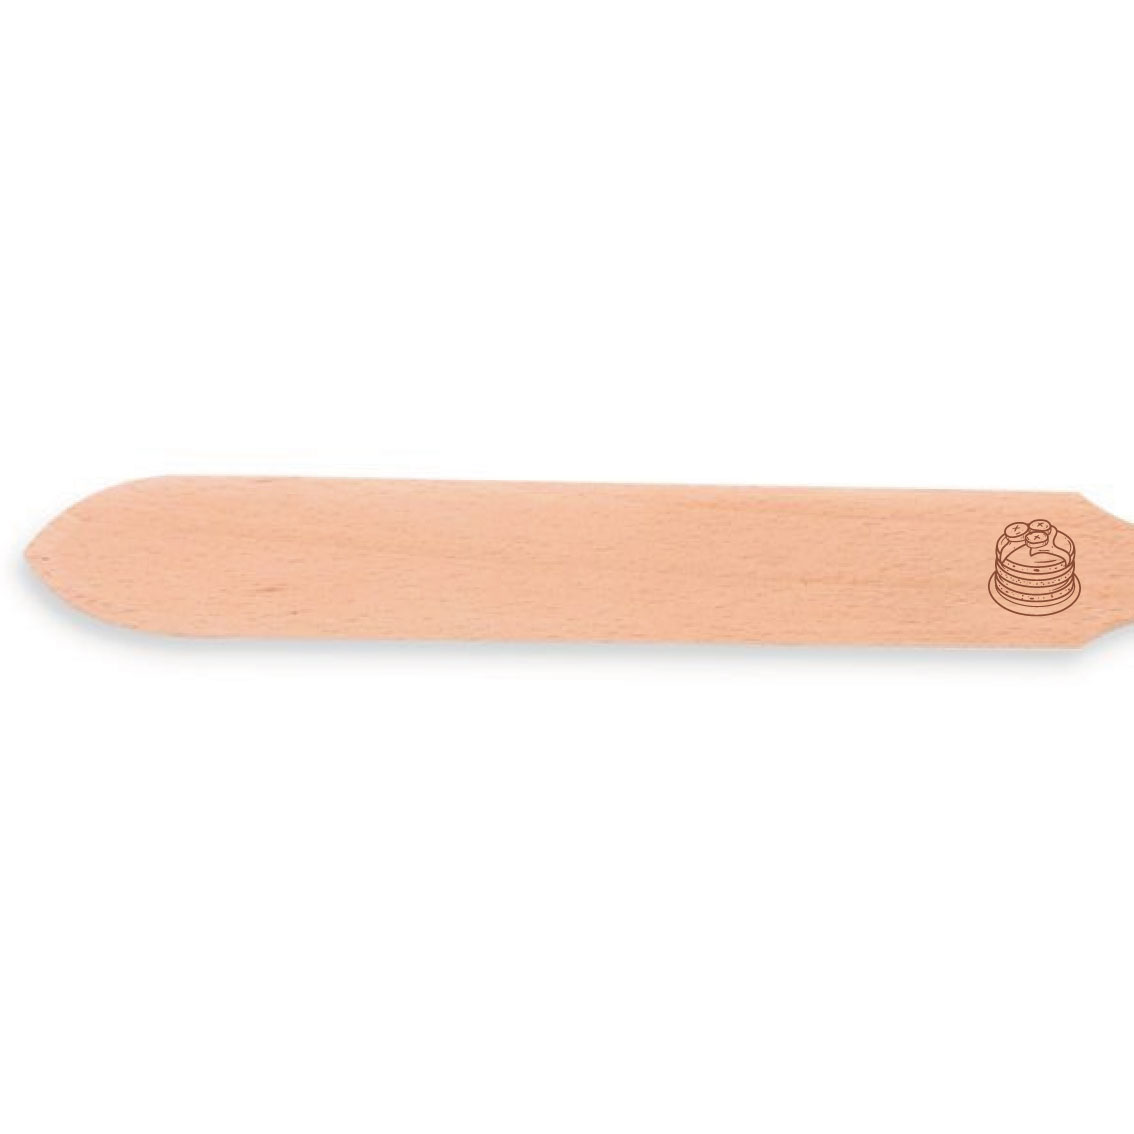 Grande spatule à crêpes personnalisée Les meilleures crêpes de Maman